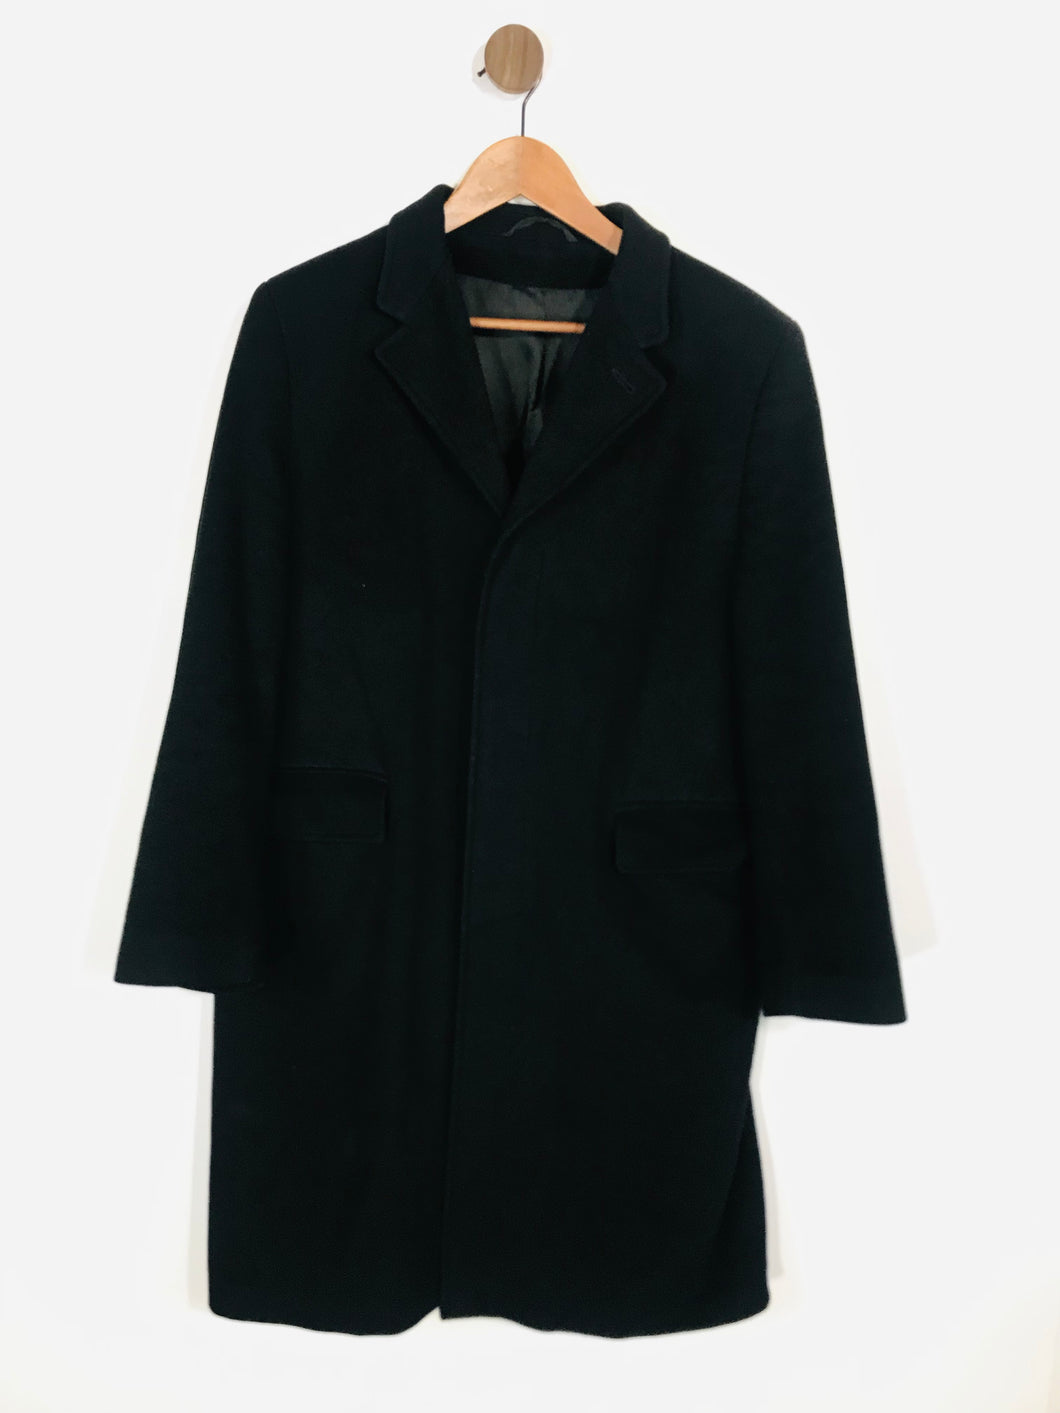 Jaeger Men's Wool Smart Overcoat Coat | L | Black